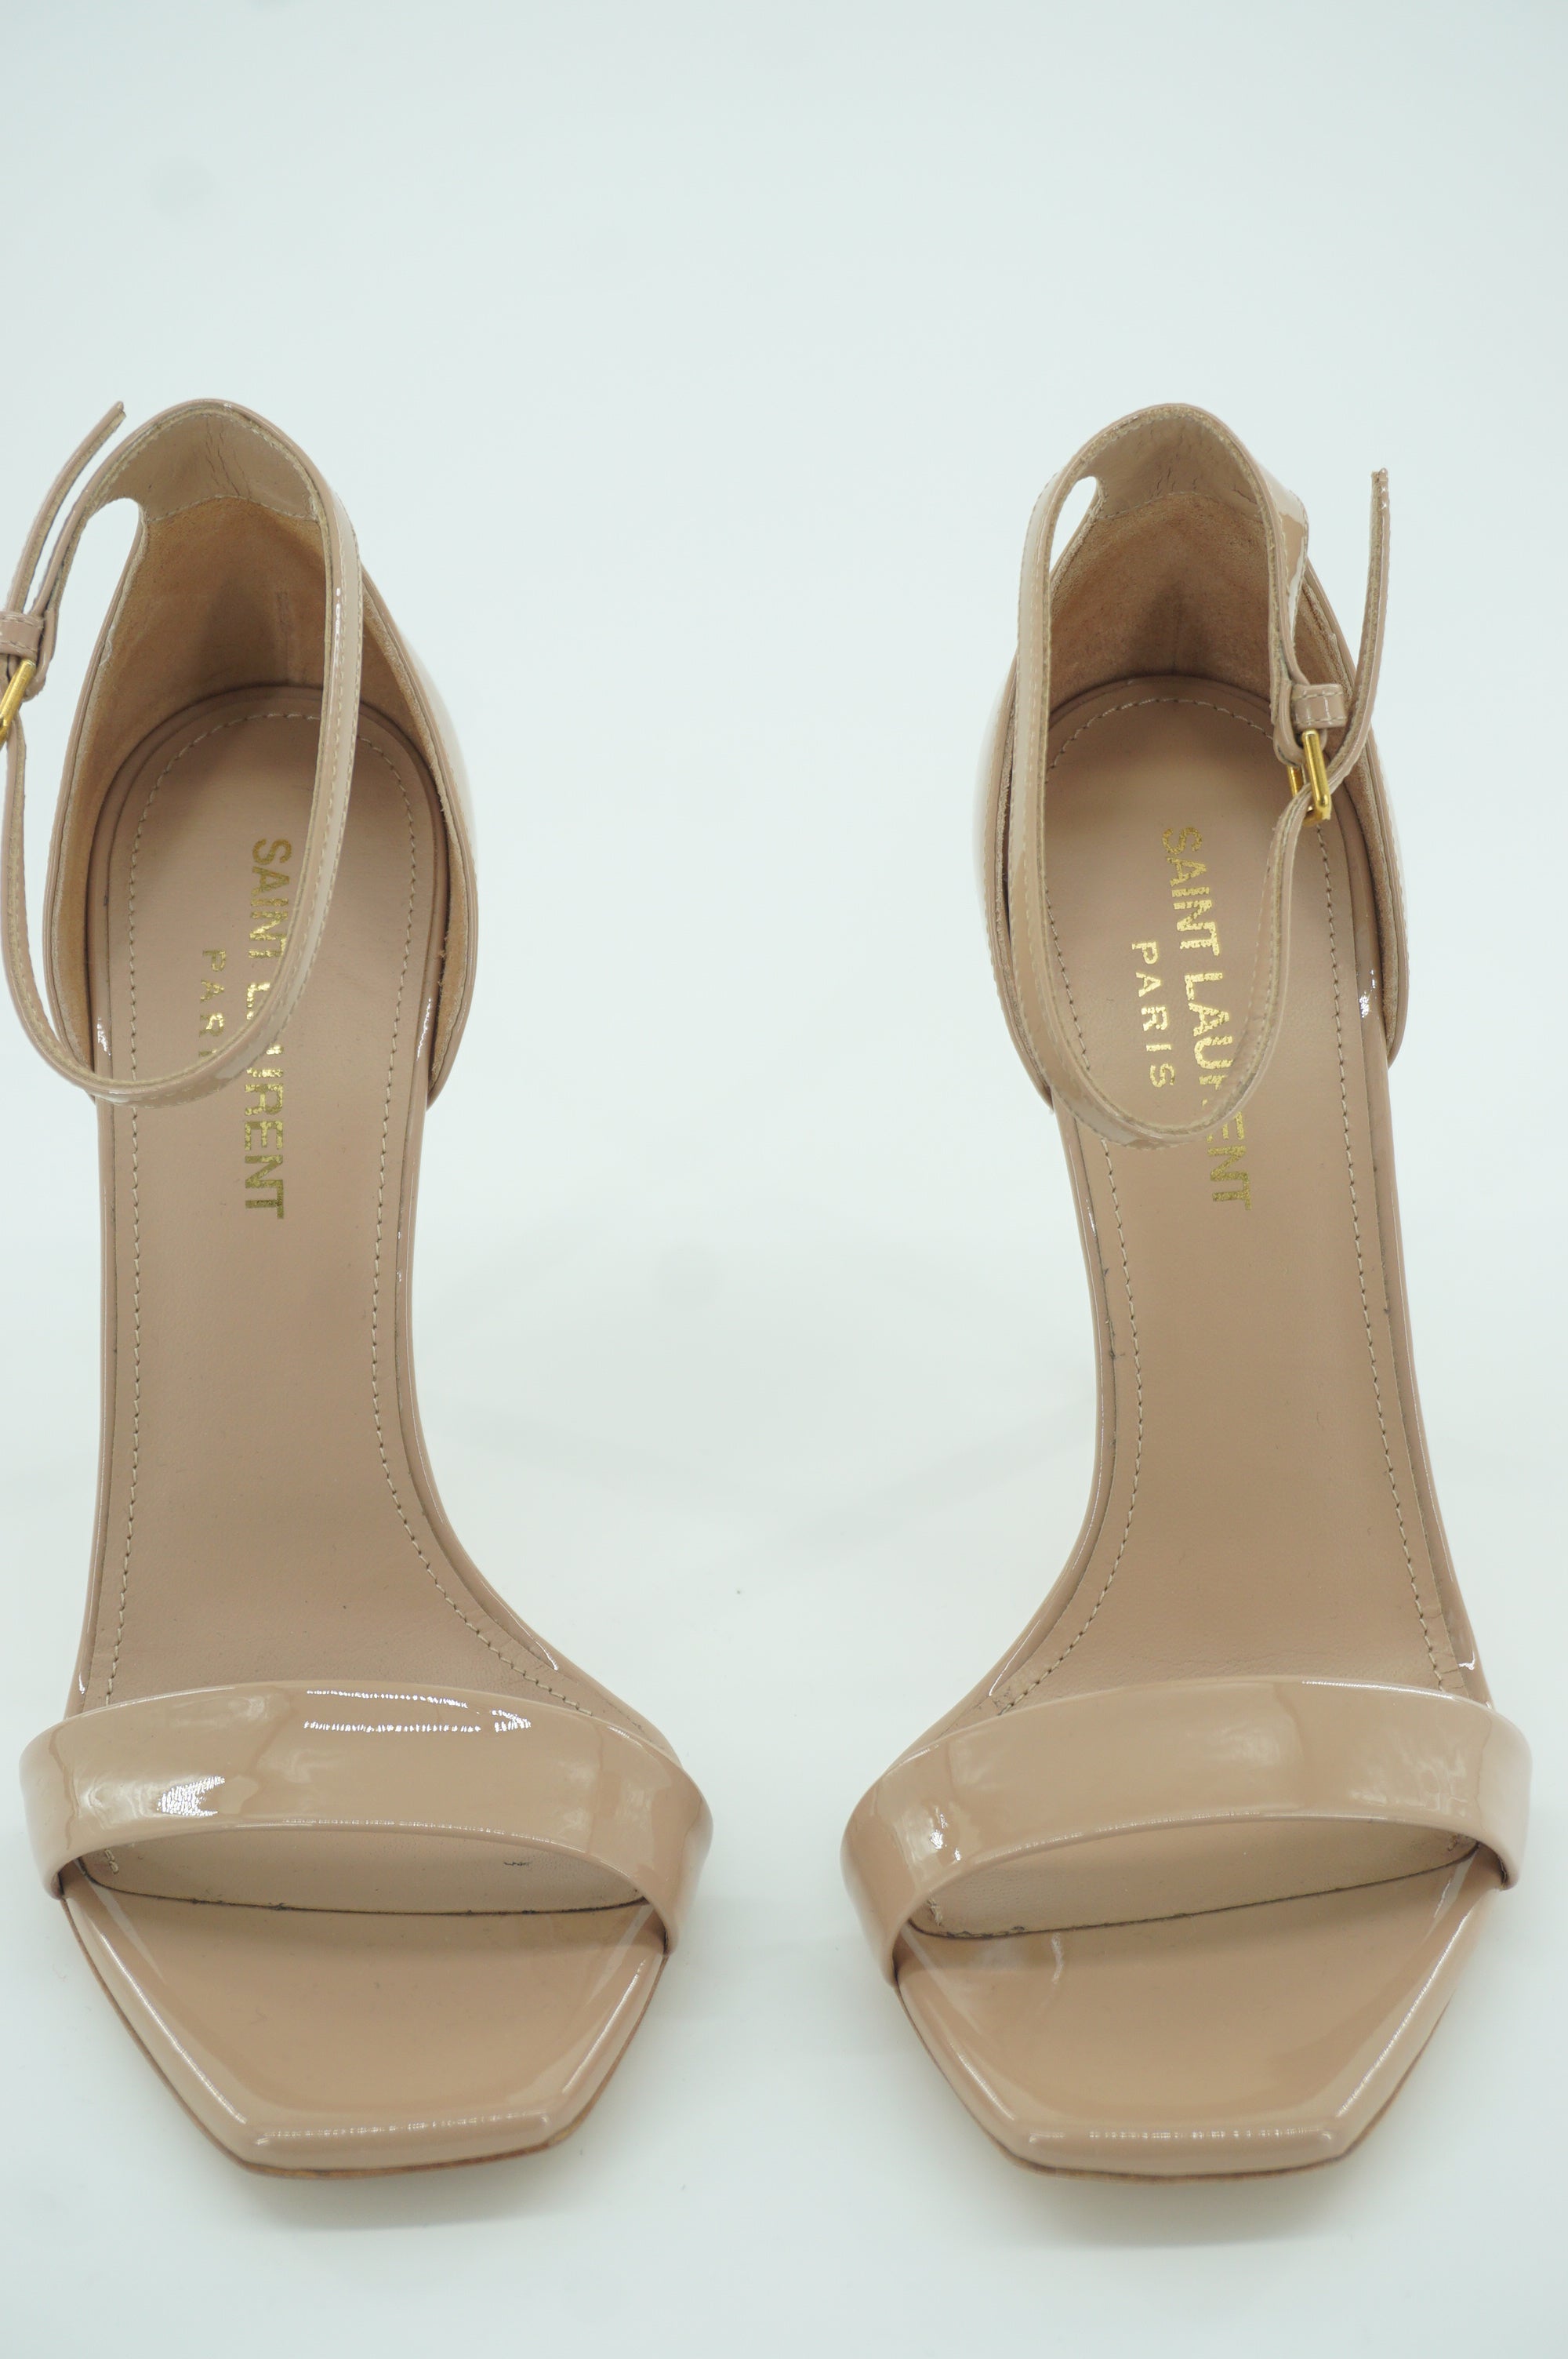 Saint Laurent Paris Amnber Nude Patent Sandals size 36 Pumps Ankle Strappy YSL